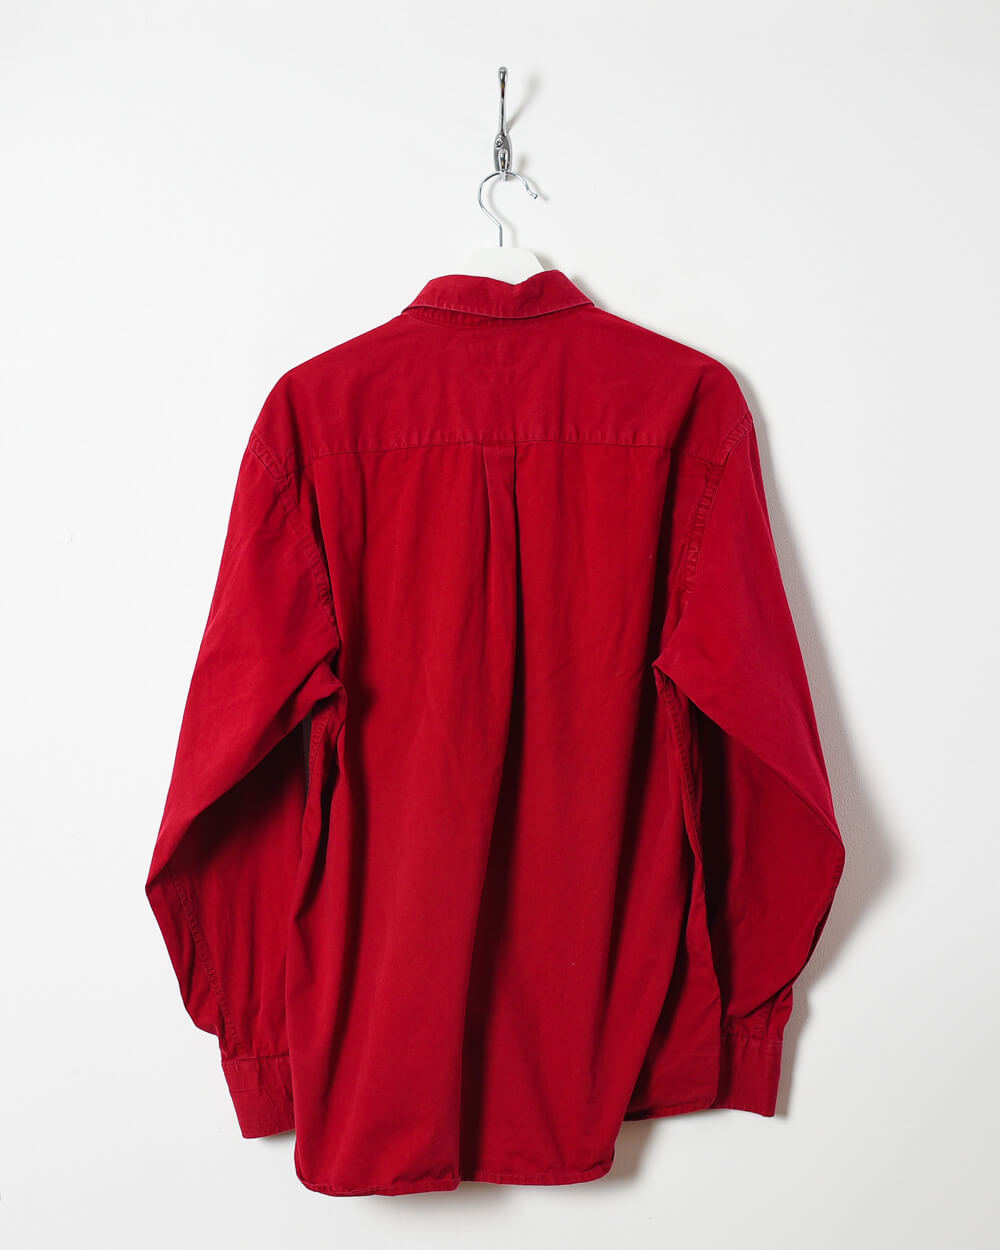 Red Ralph Lauren Shirt - Medium